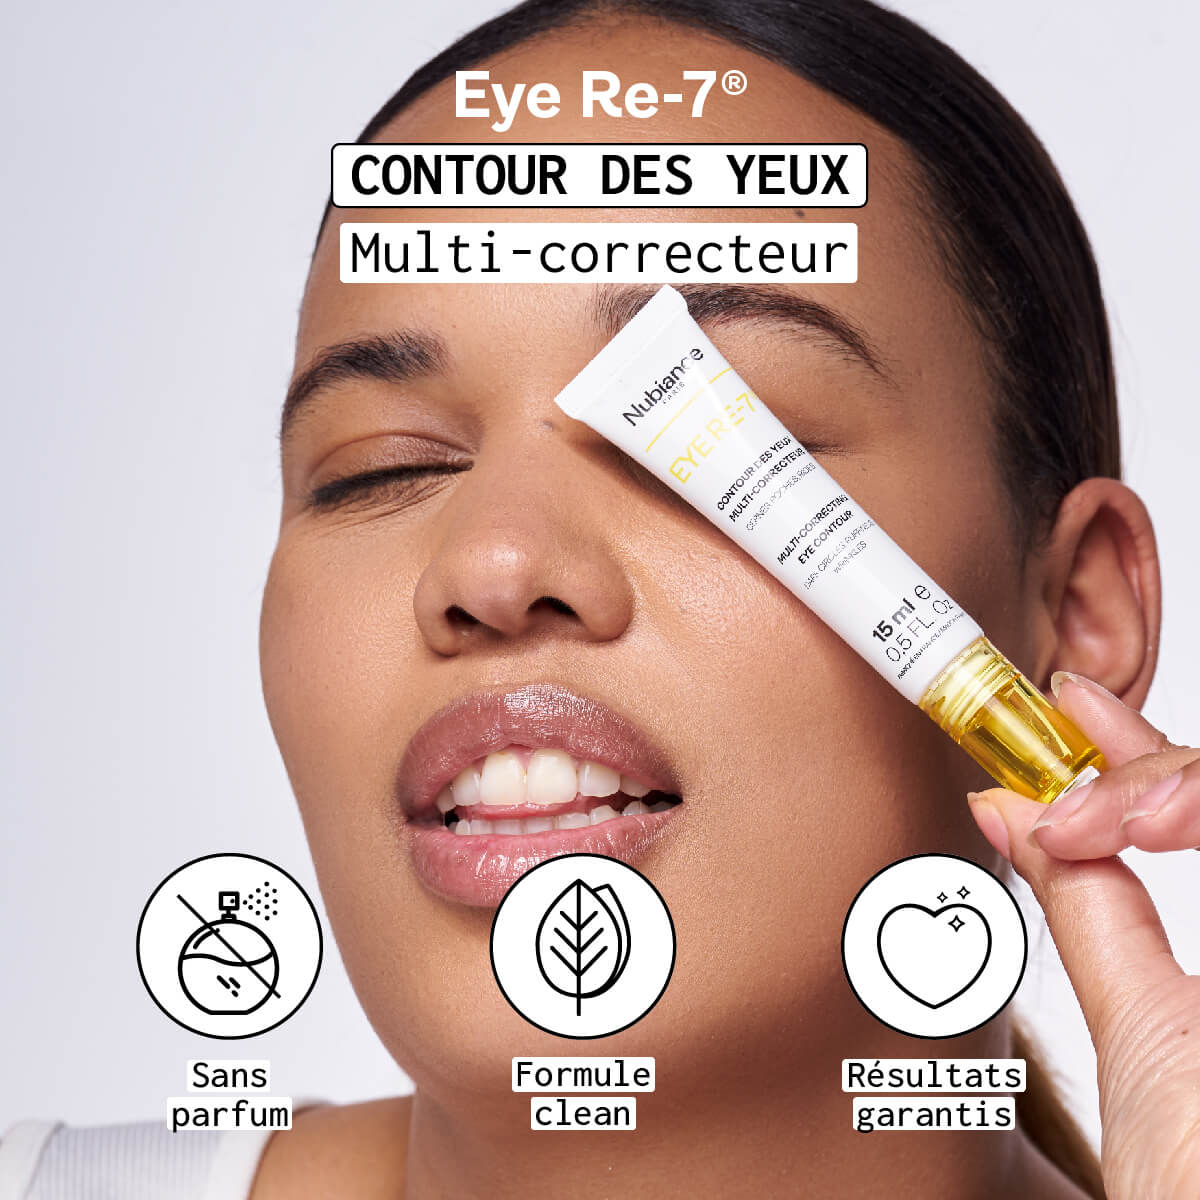 EYE RE-7® - Multi-corrector eye contour 